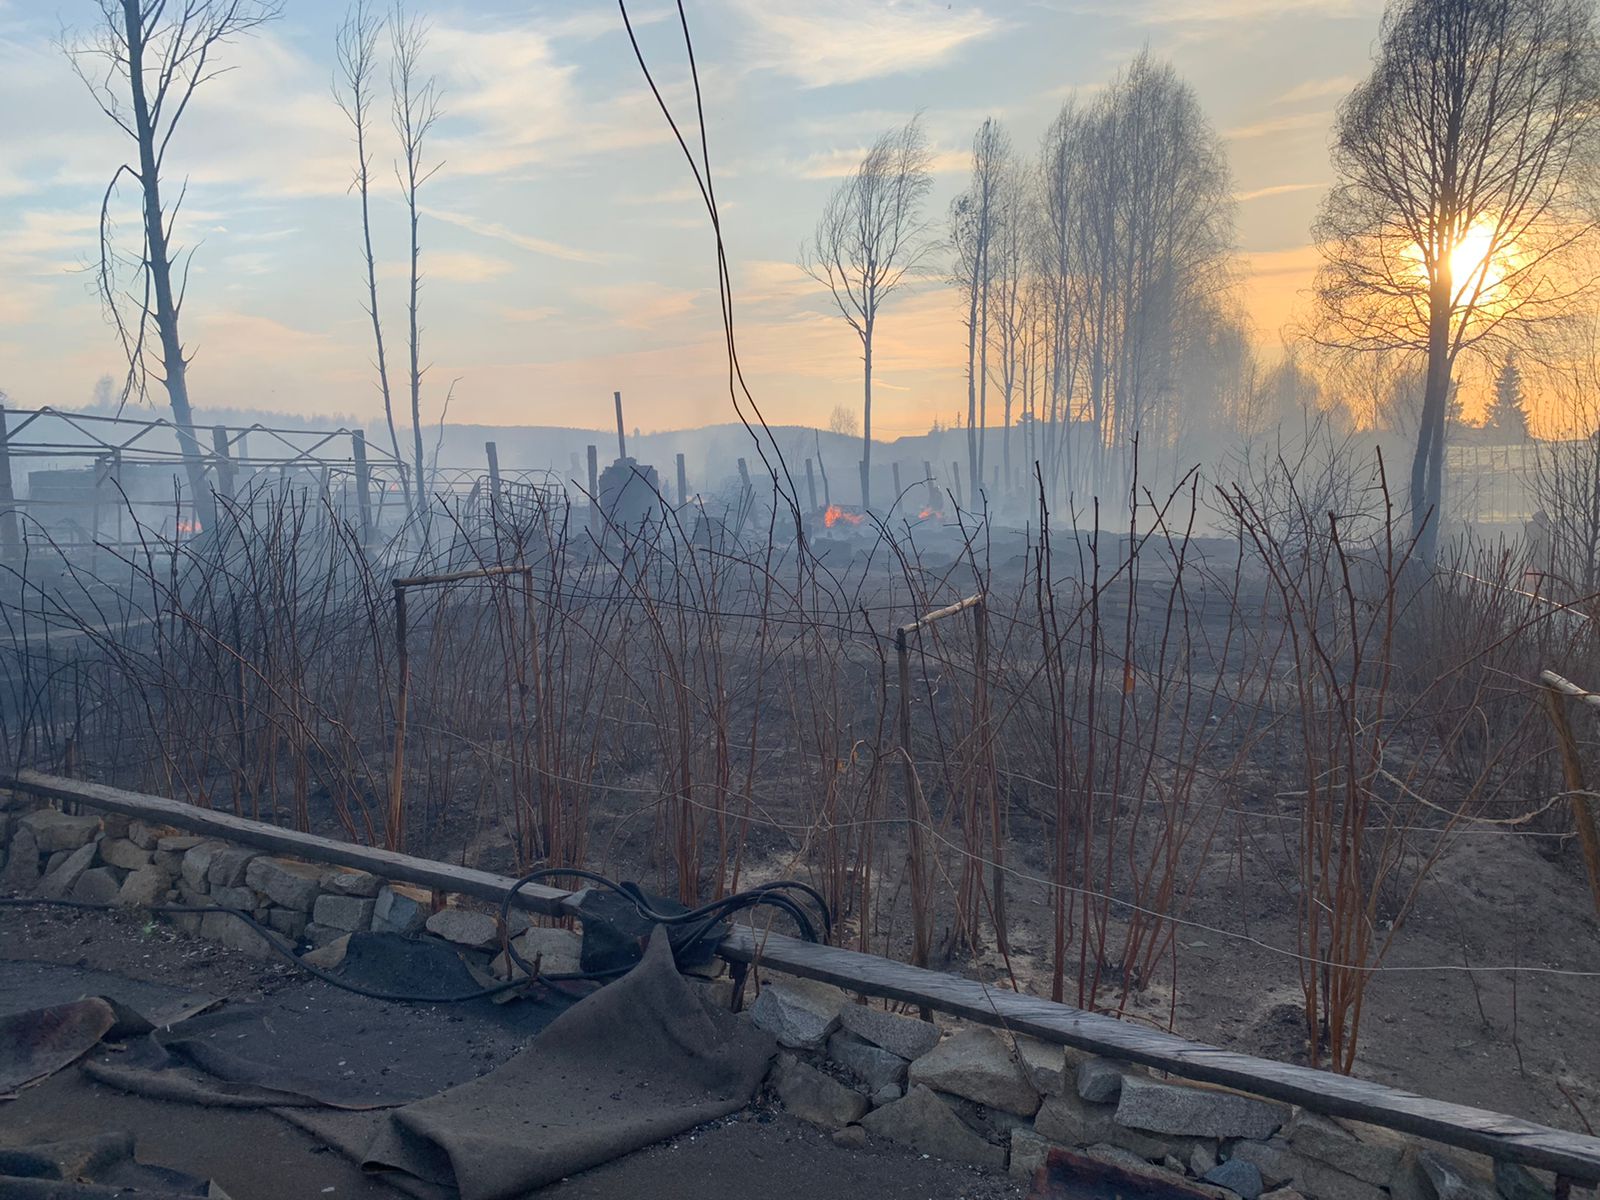 Сгорели десятки домов. Местные жители показали последствия мощного пожара, который бушевал под Екатеринбургом